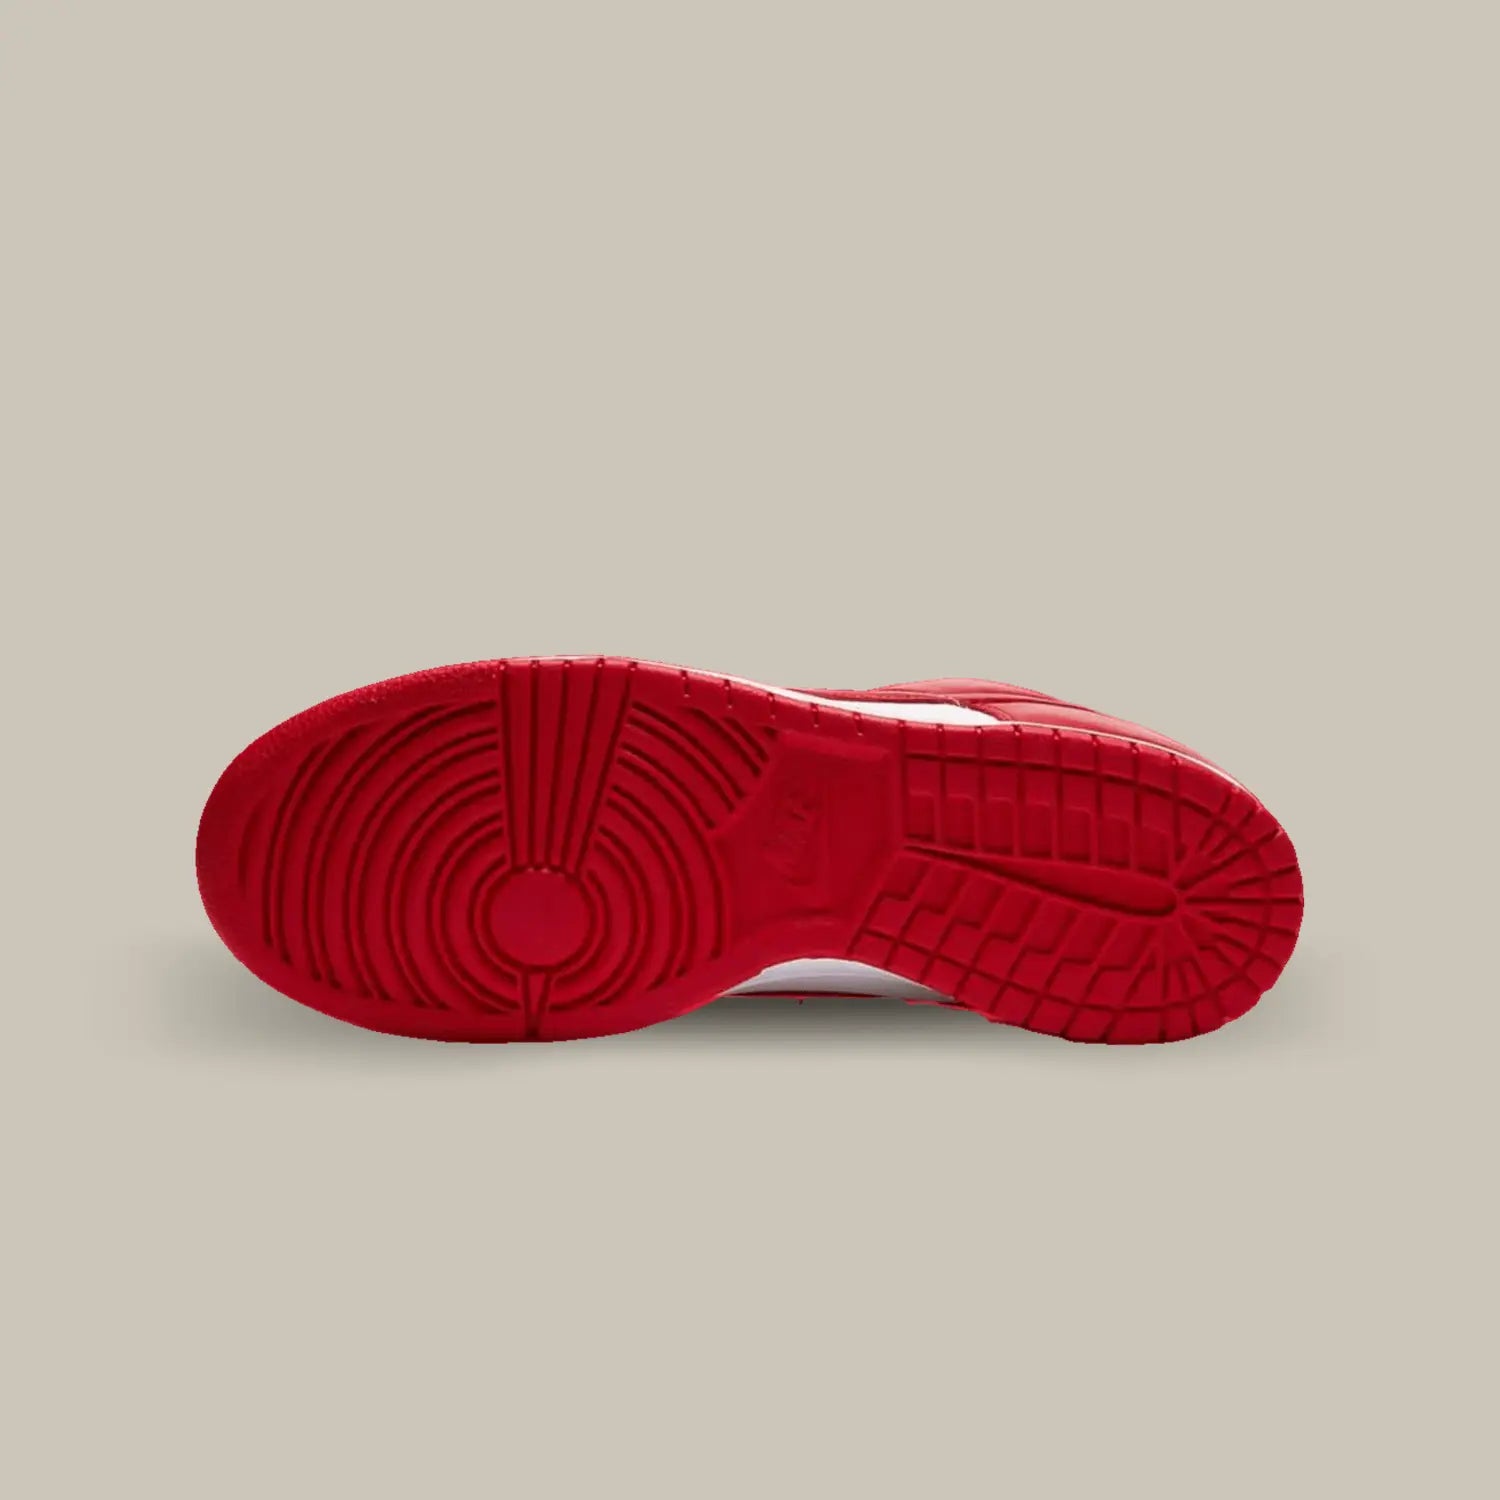 La semelle de la Nike Dunk Low University Red de couleur rouge.